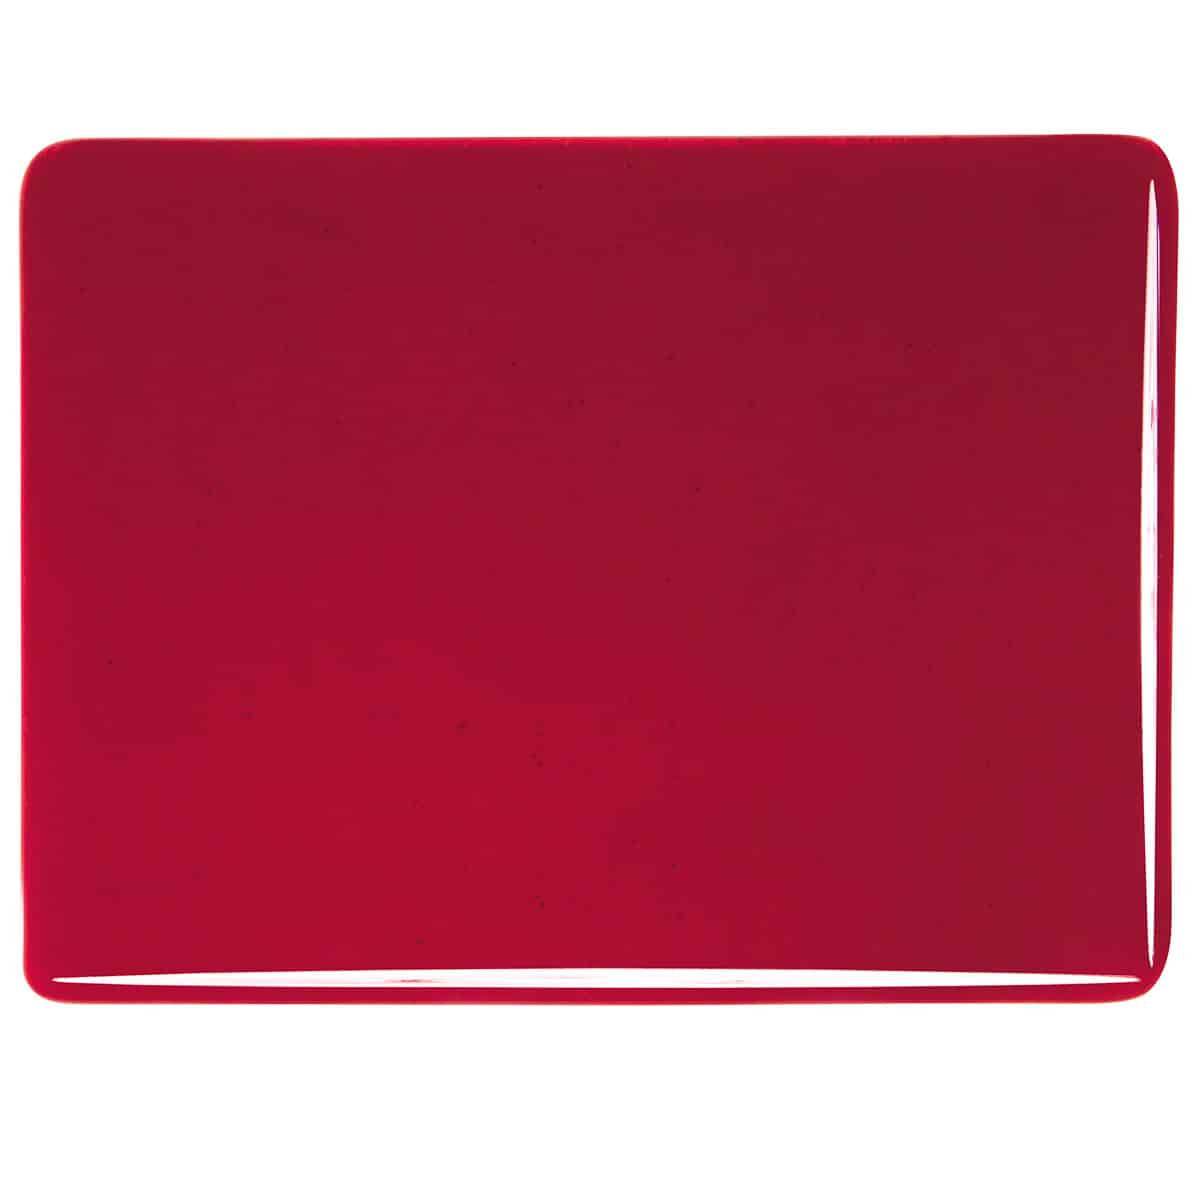 001322 Garnet Red Transparent